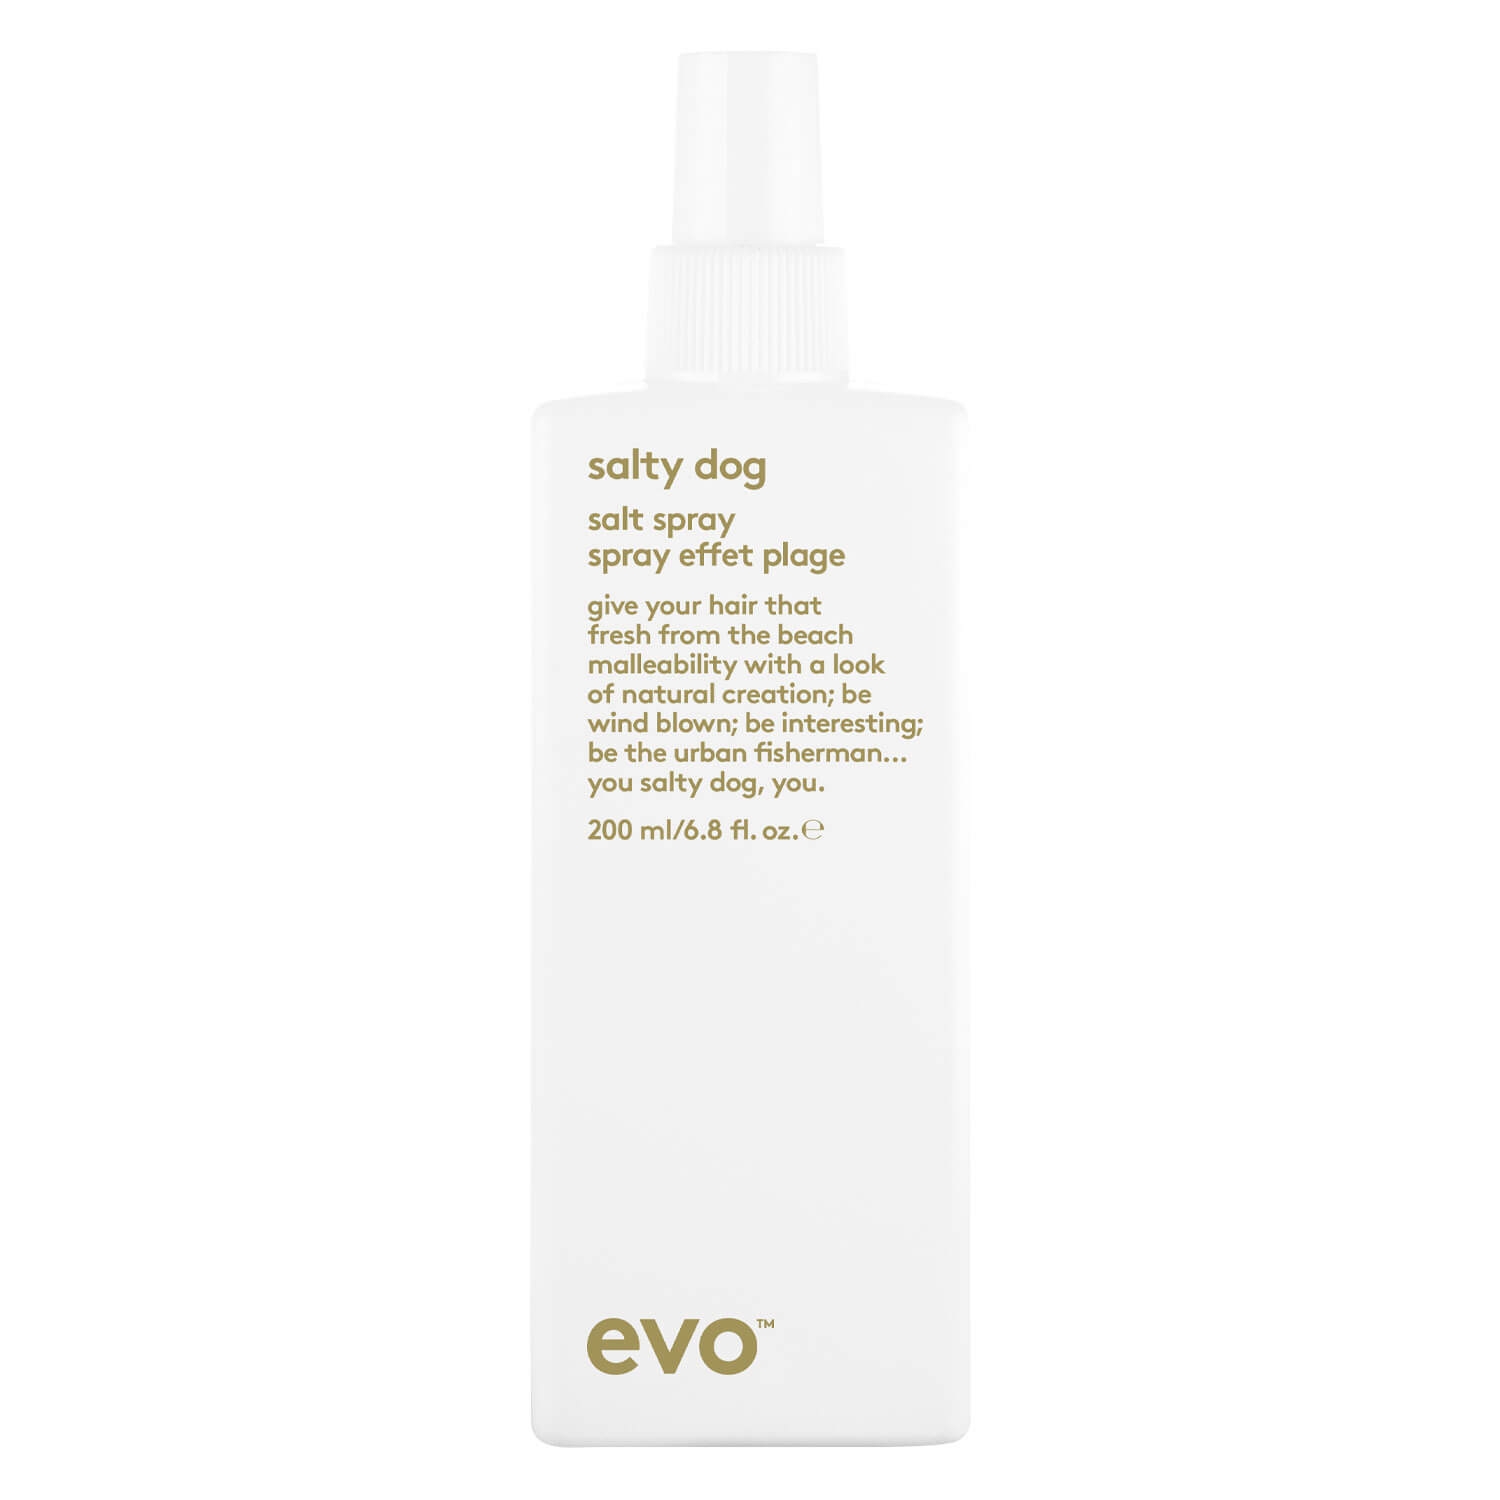 Produktbild von evo style - salty dog salt spray